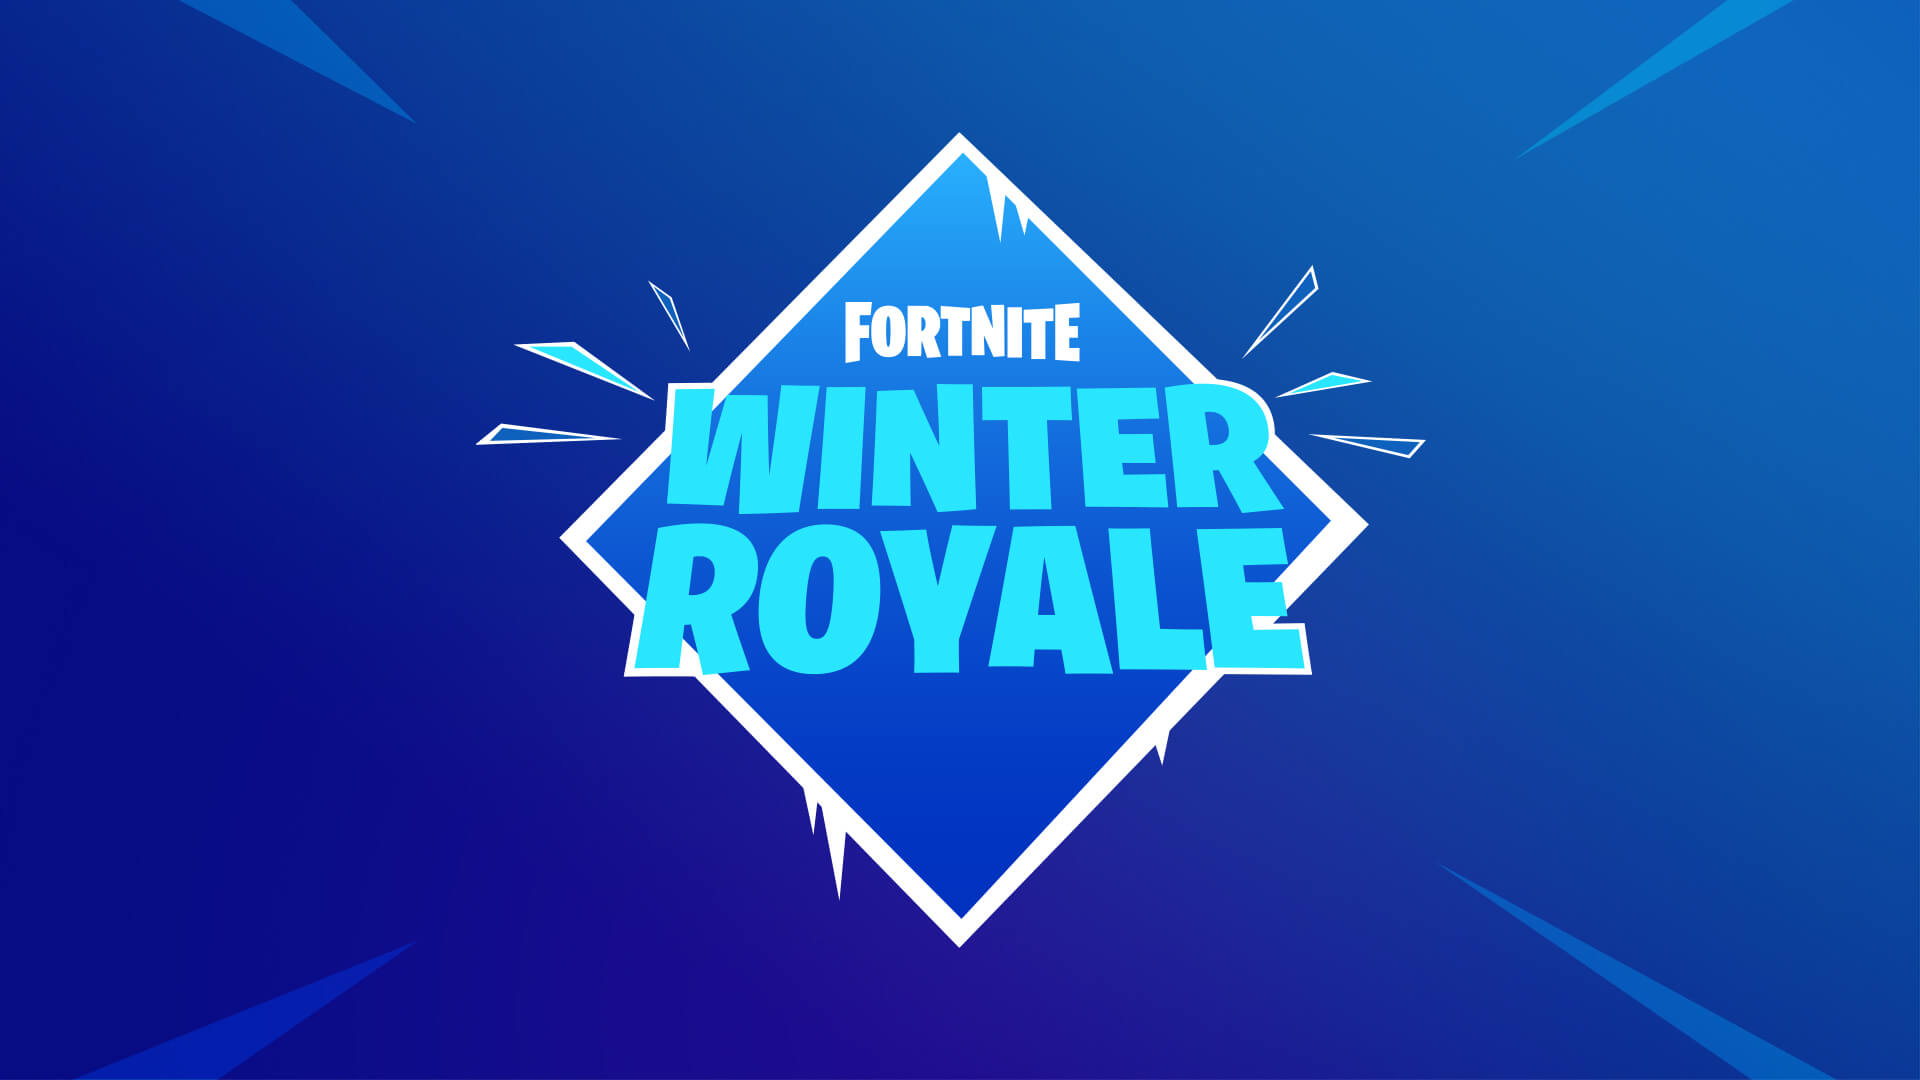 Fortnite Winter Royale 2019 Standings Leaderboard